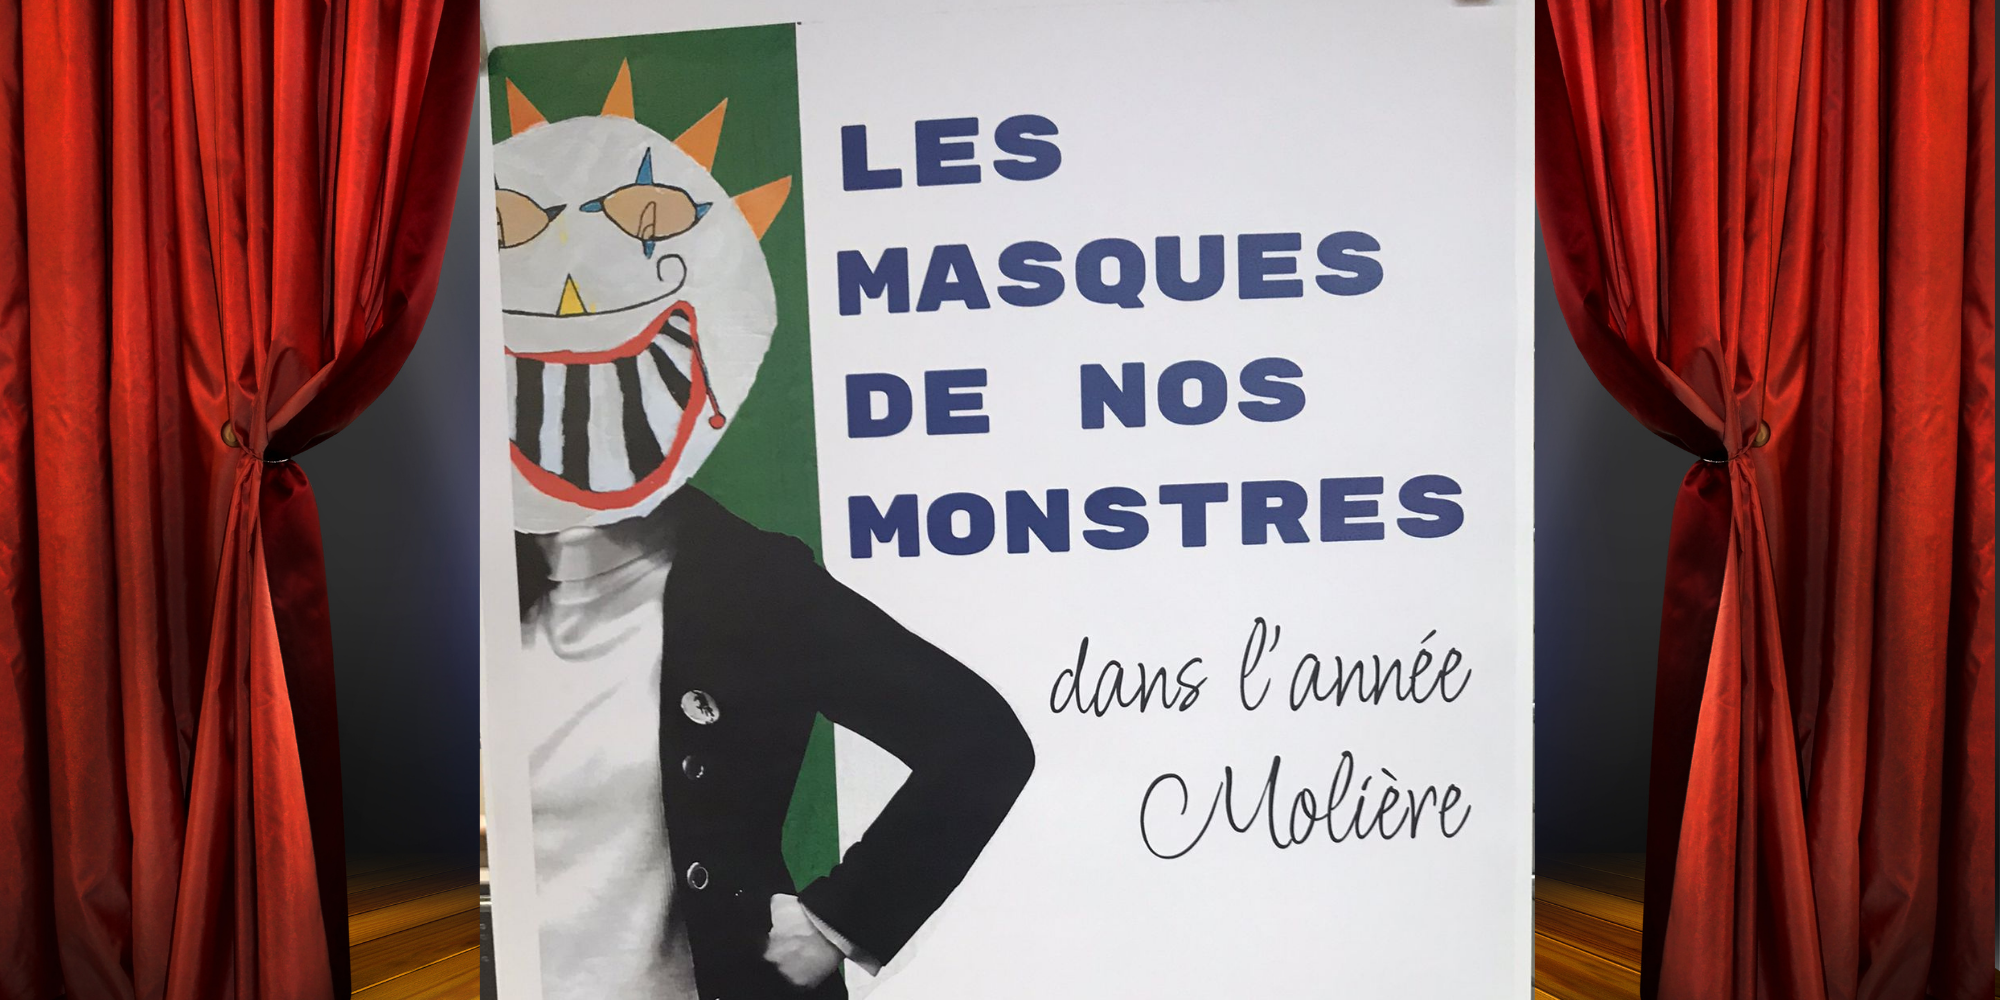 L’exposition “Les masques de nos monstres” au CDI